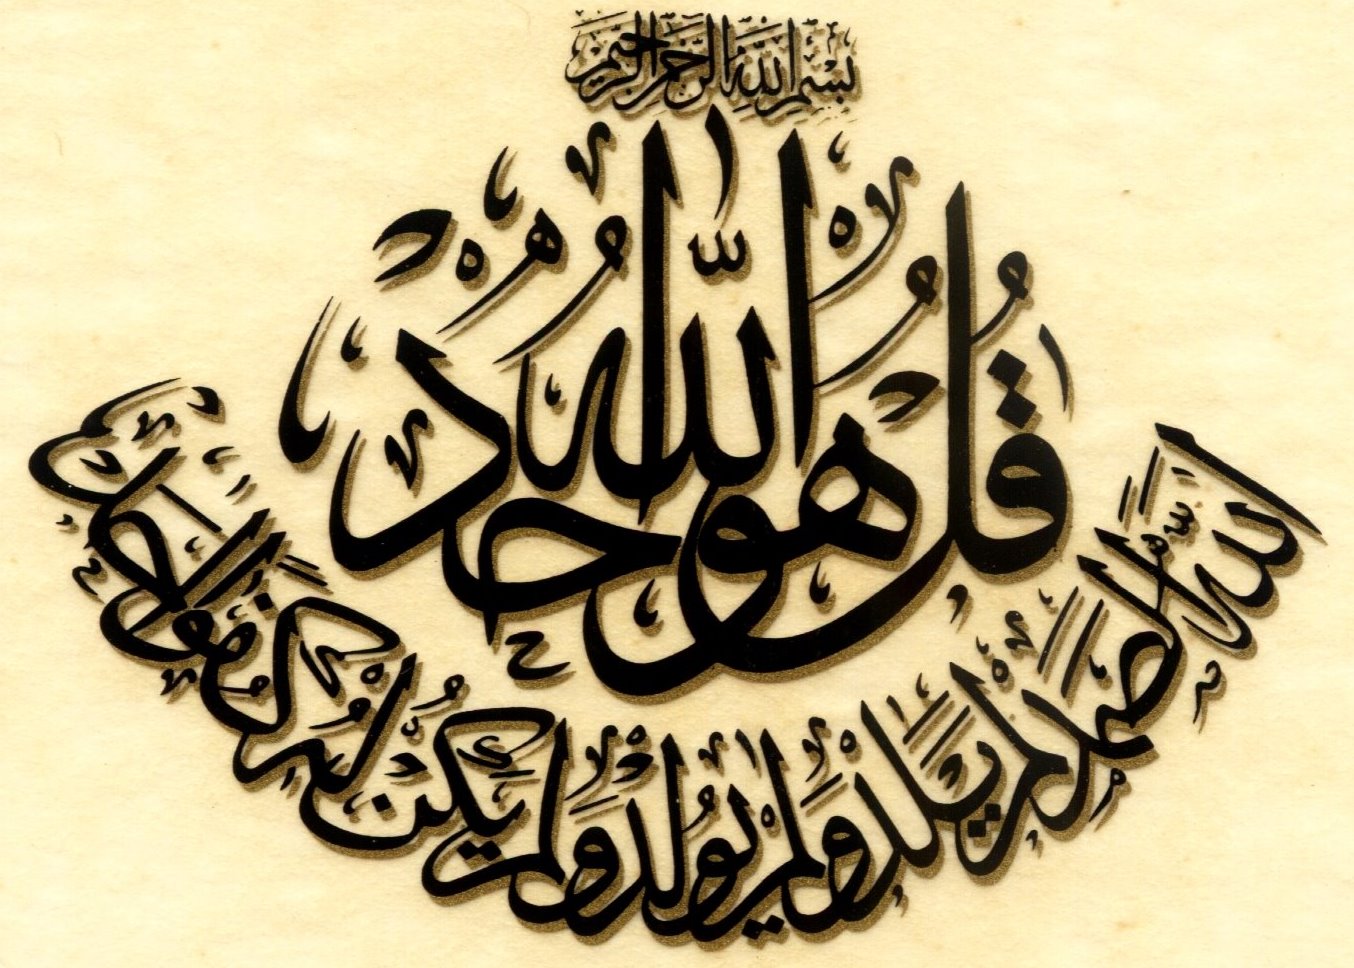 Gambar Tulisan Kaligrafi Qul Huwallahu Ahad - KibrisPDR